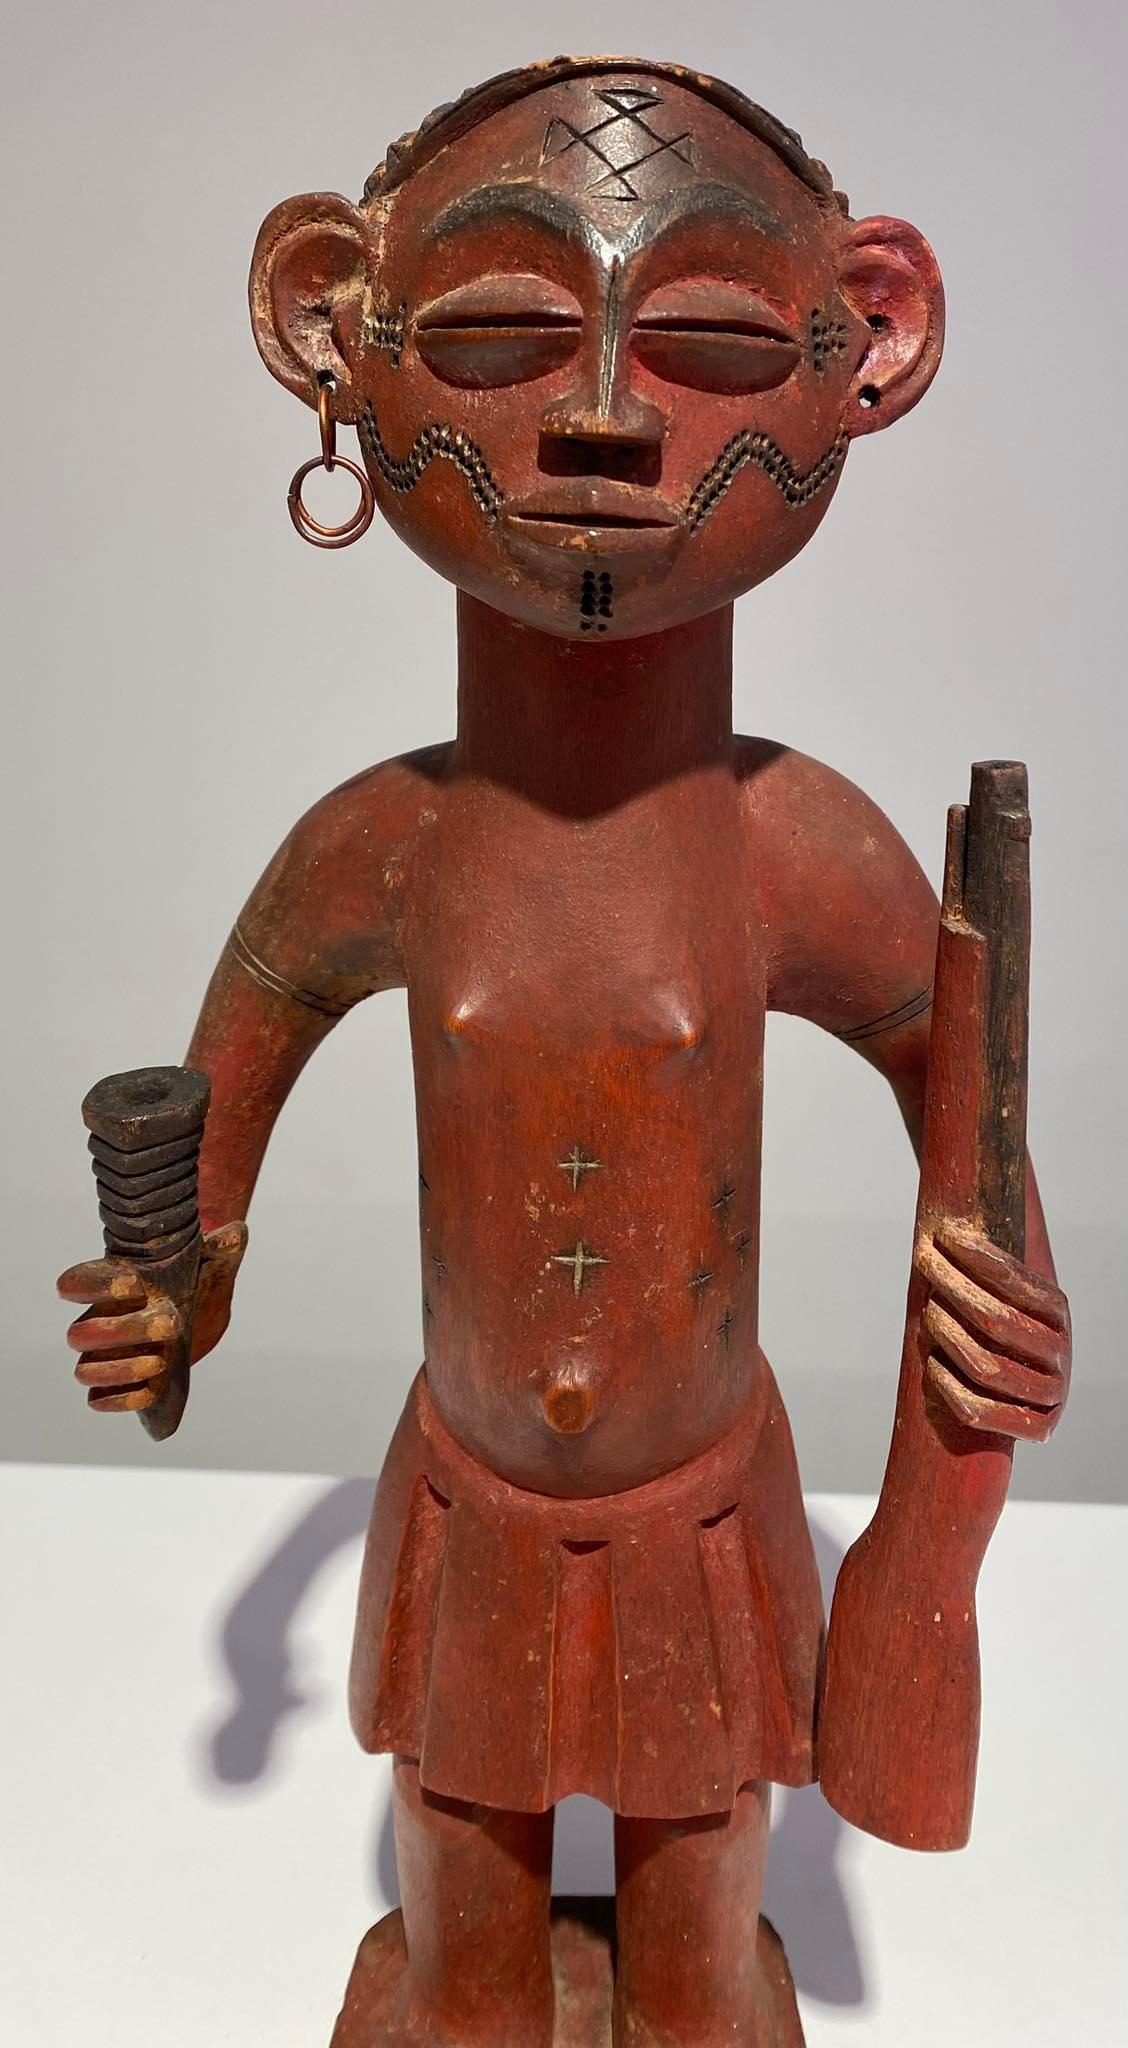 Alte und außergewöhnliche Statue des Tshokwe / Chokwe / Lwena Stammes - Dr. Kongo Afrikanische Kunst - frühes 20. Jahrhundert (ca. 1910-1930)
Fetisch Tshibinda (Ilunga) oder Yanga
Beschützer der Jäger / Territiore Tshikapa Kasai
Batshoko-Gruppe